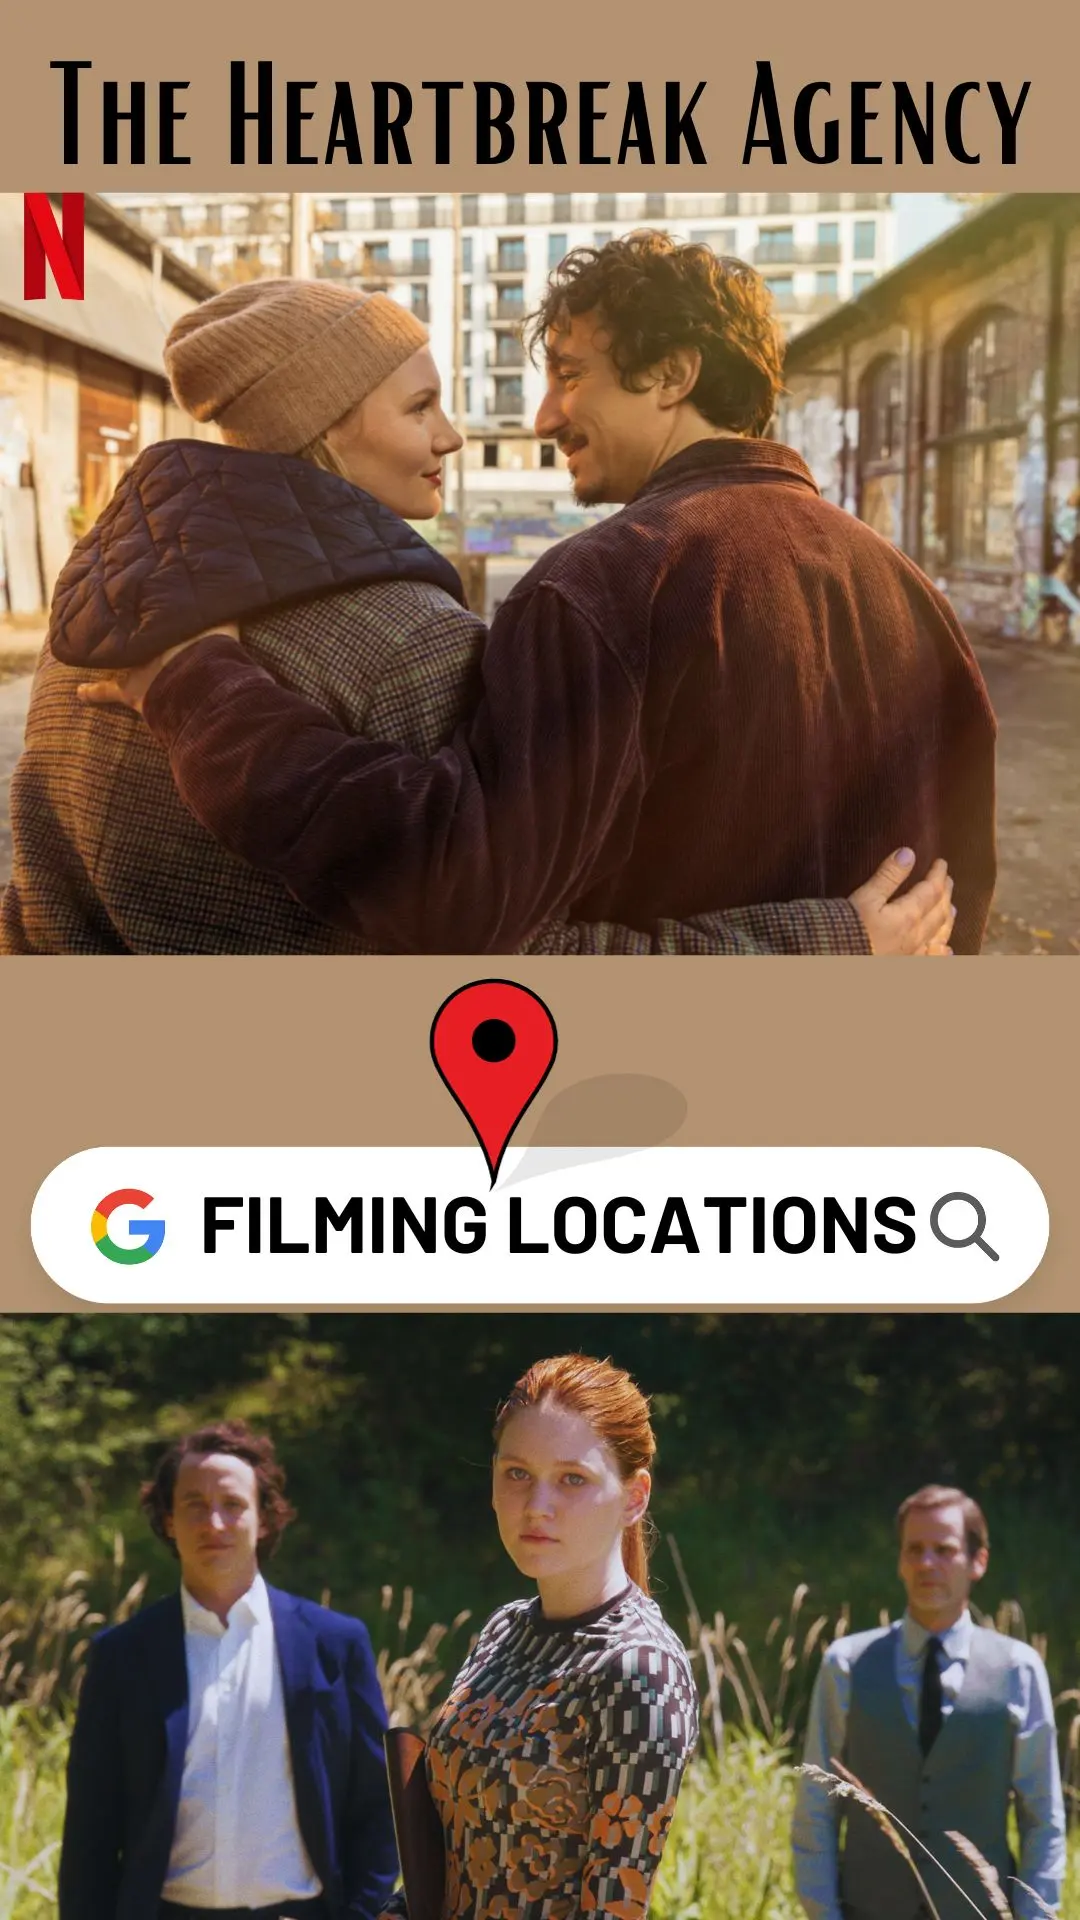 The Heartbreak Agency Filming Locations